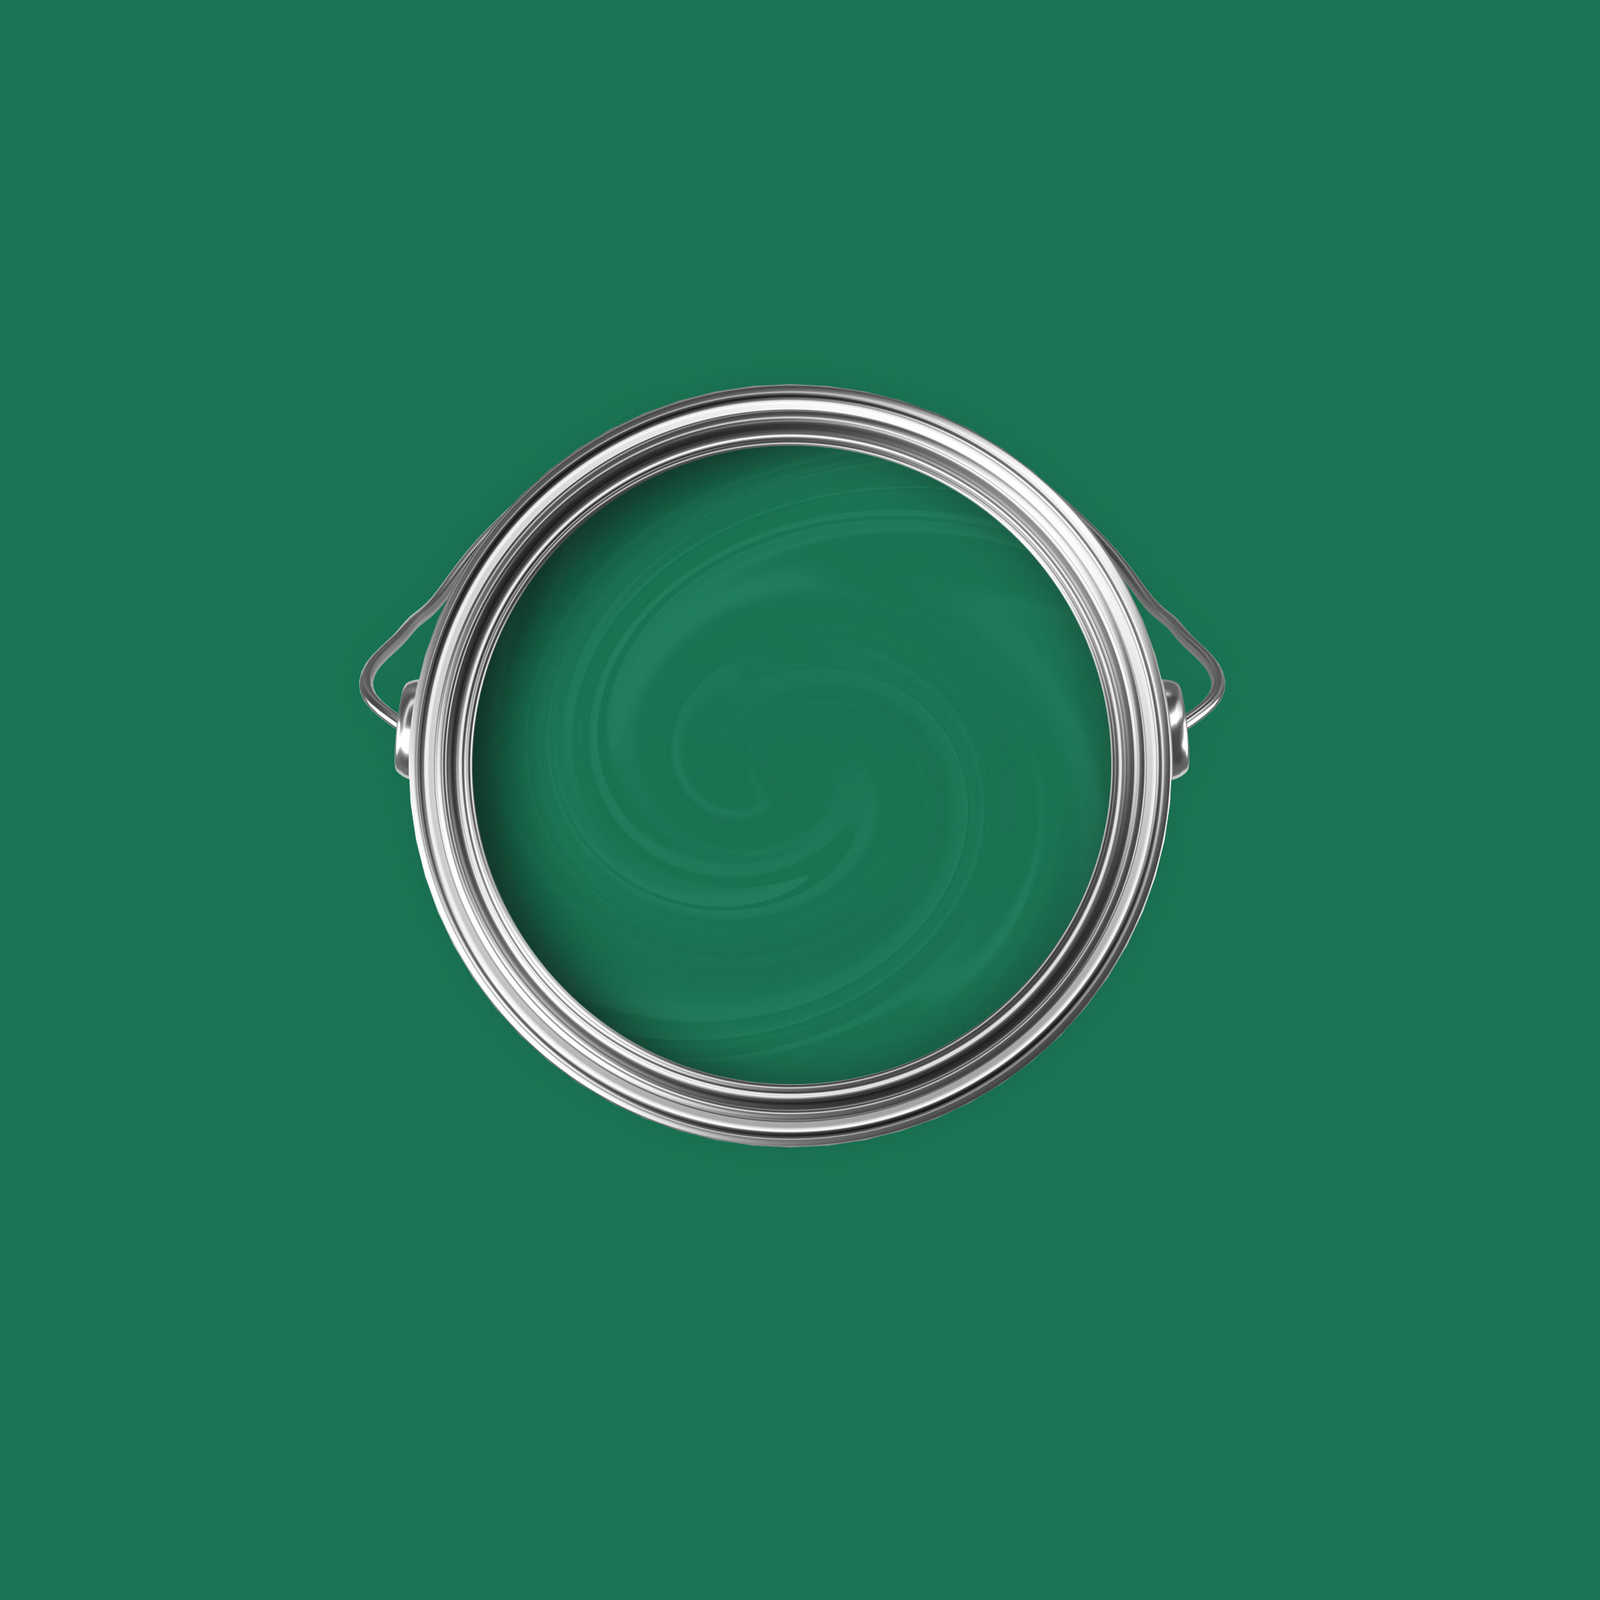             Premium Wandfarbe natürliches Flaschengrün »Gorgeous Green« NW500 – 2,5 Liter
        